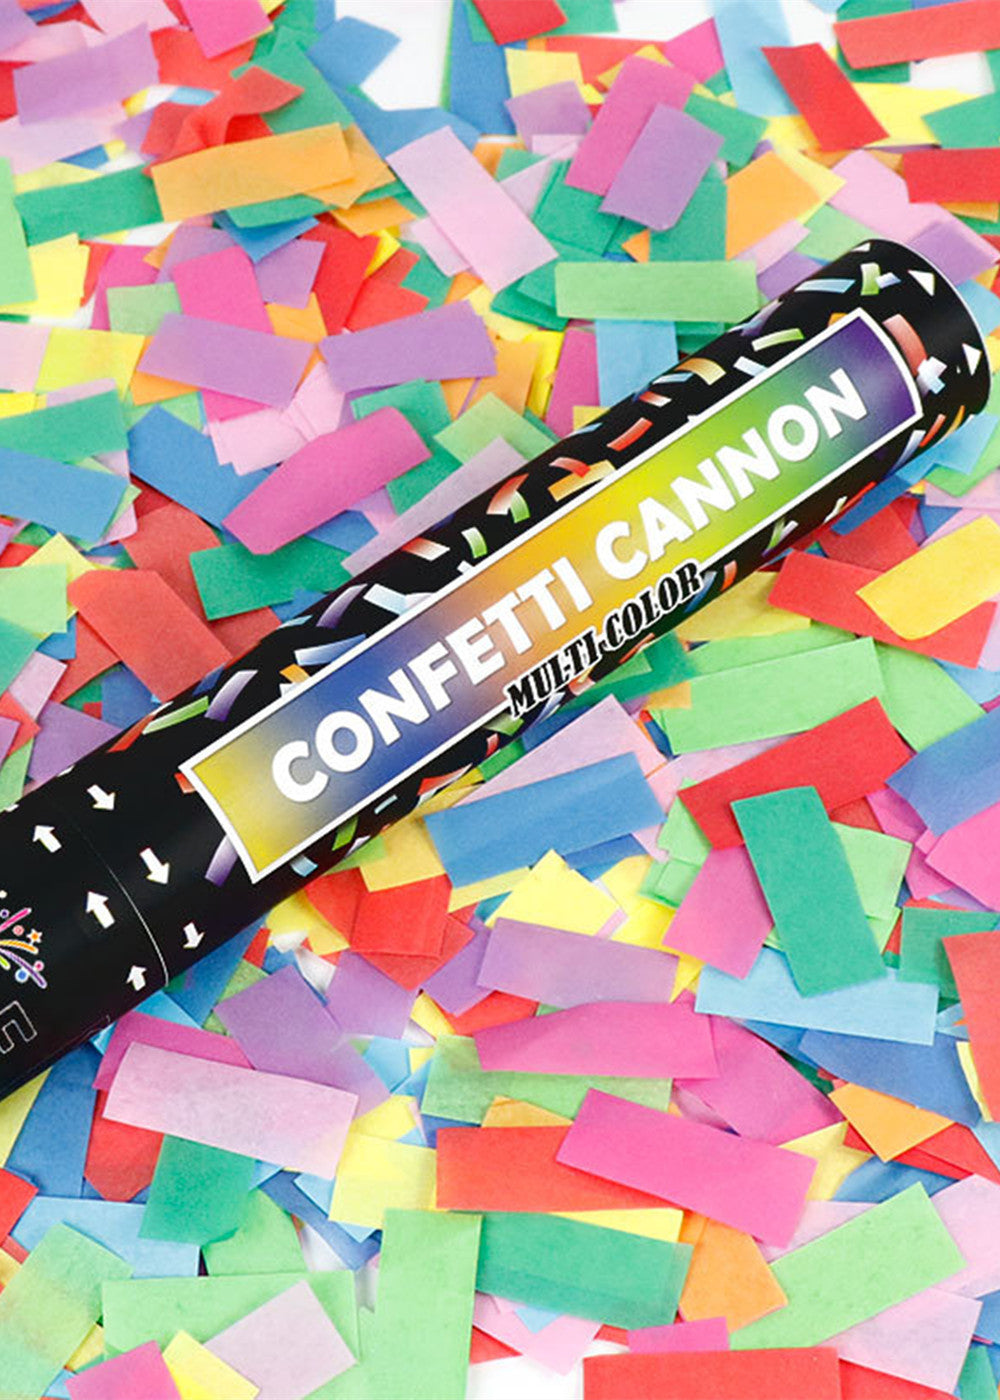 Multicolor Handheld Confetti Popper Cannon 12" (Set of 2)